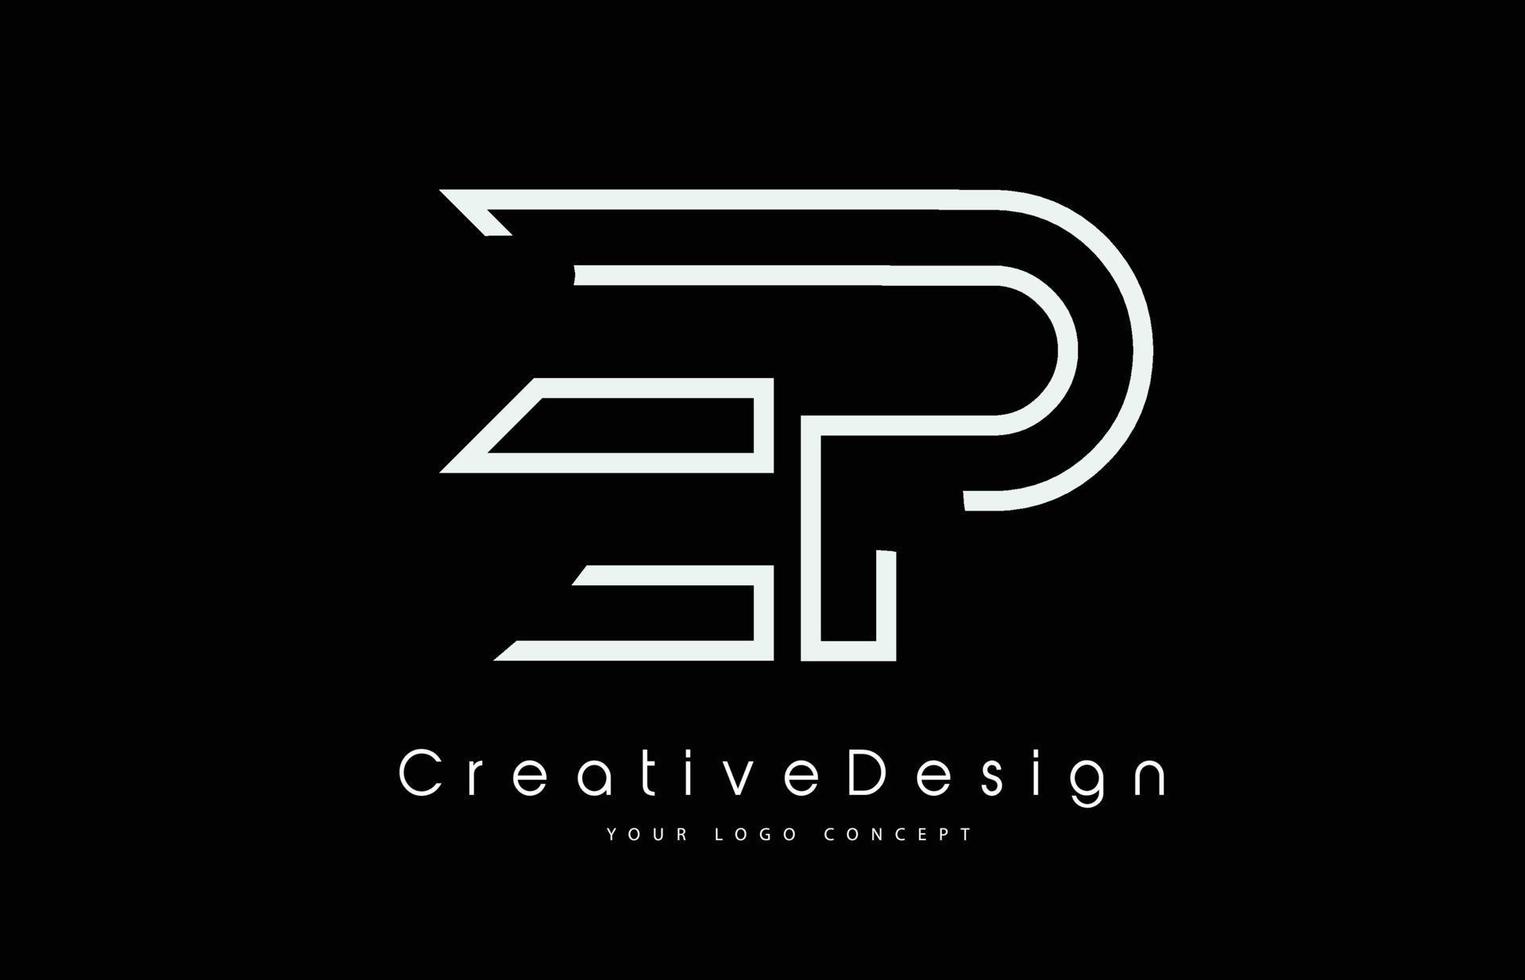 création de logo de lettre ep ep en couleurs blanches. vecteur